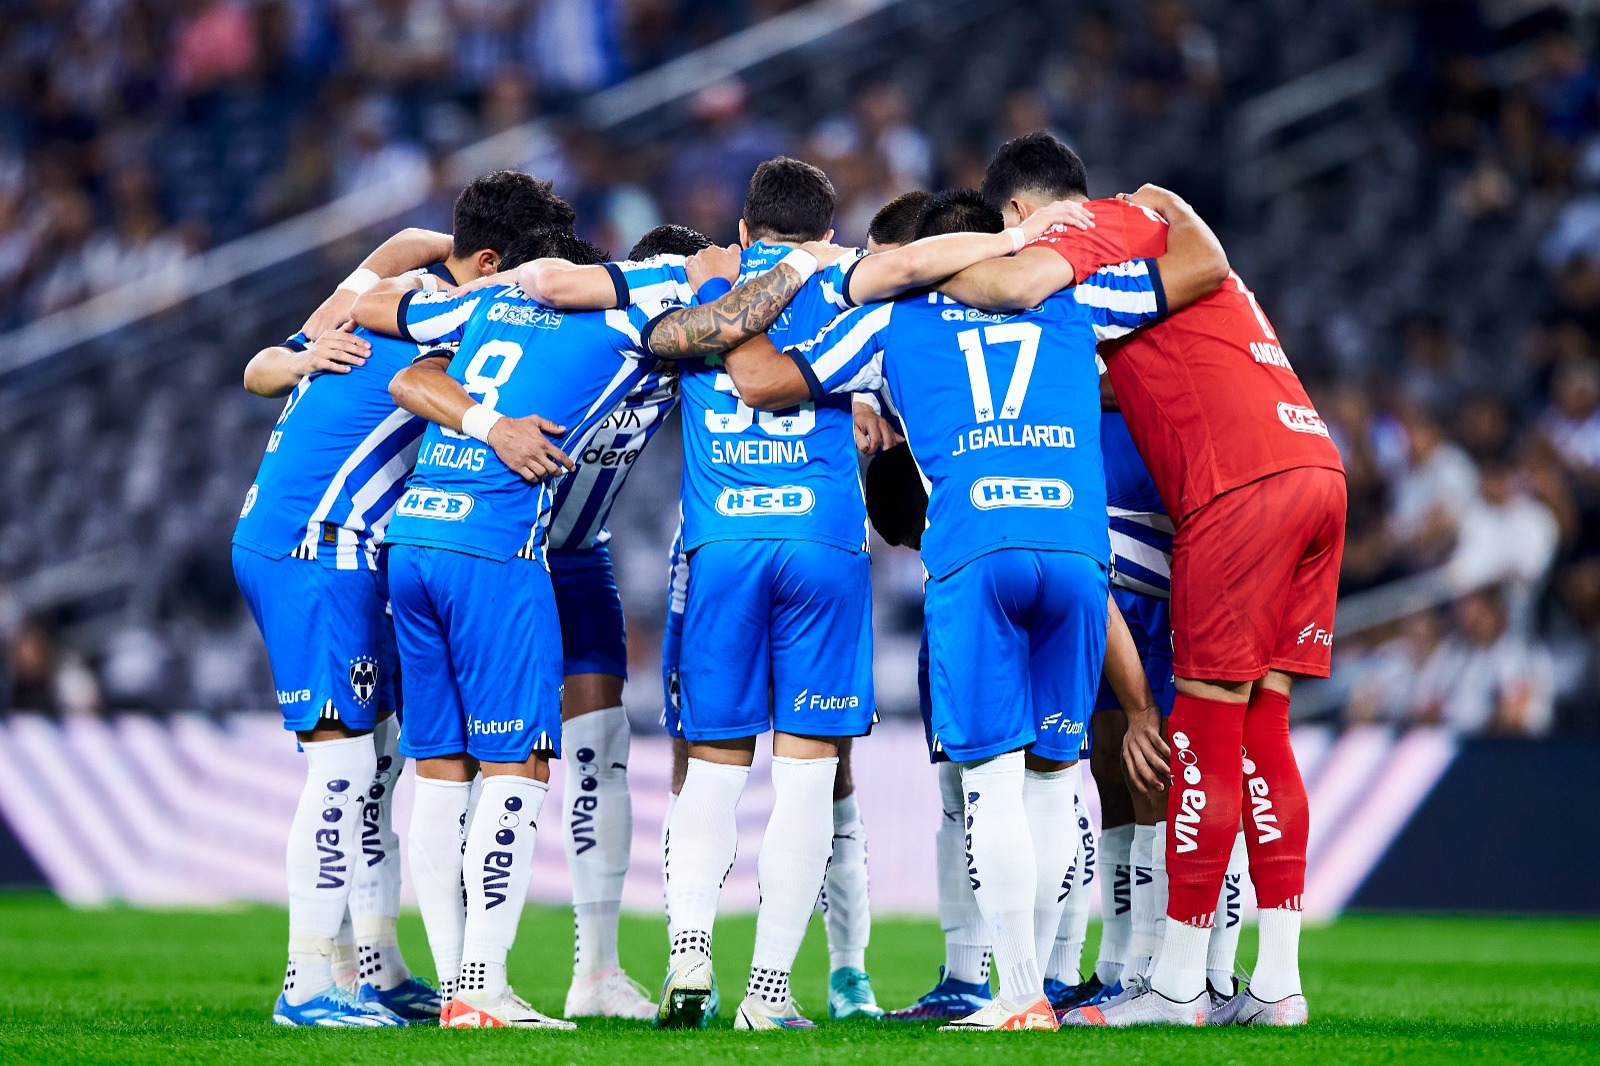 Andrada compartió que lo más complicado con lo que ha tenido que jugar en contra este Monterrey, han sido las bajas por lesión. FOTO: Ricardo Rodríguez